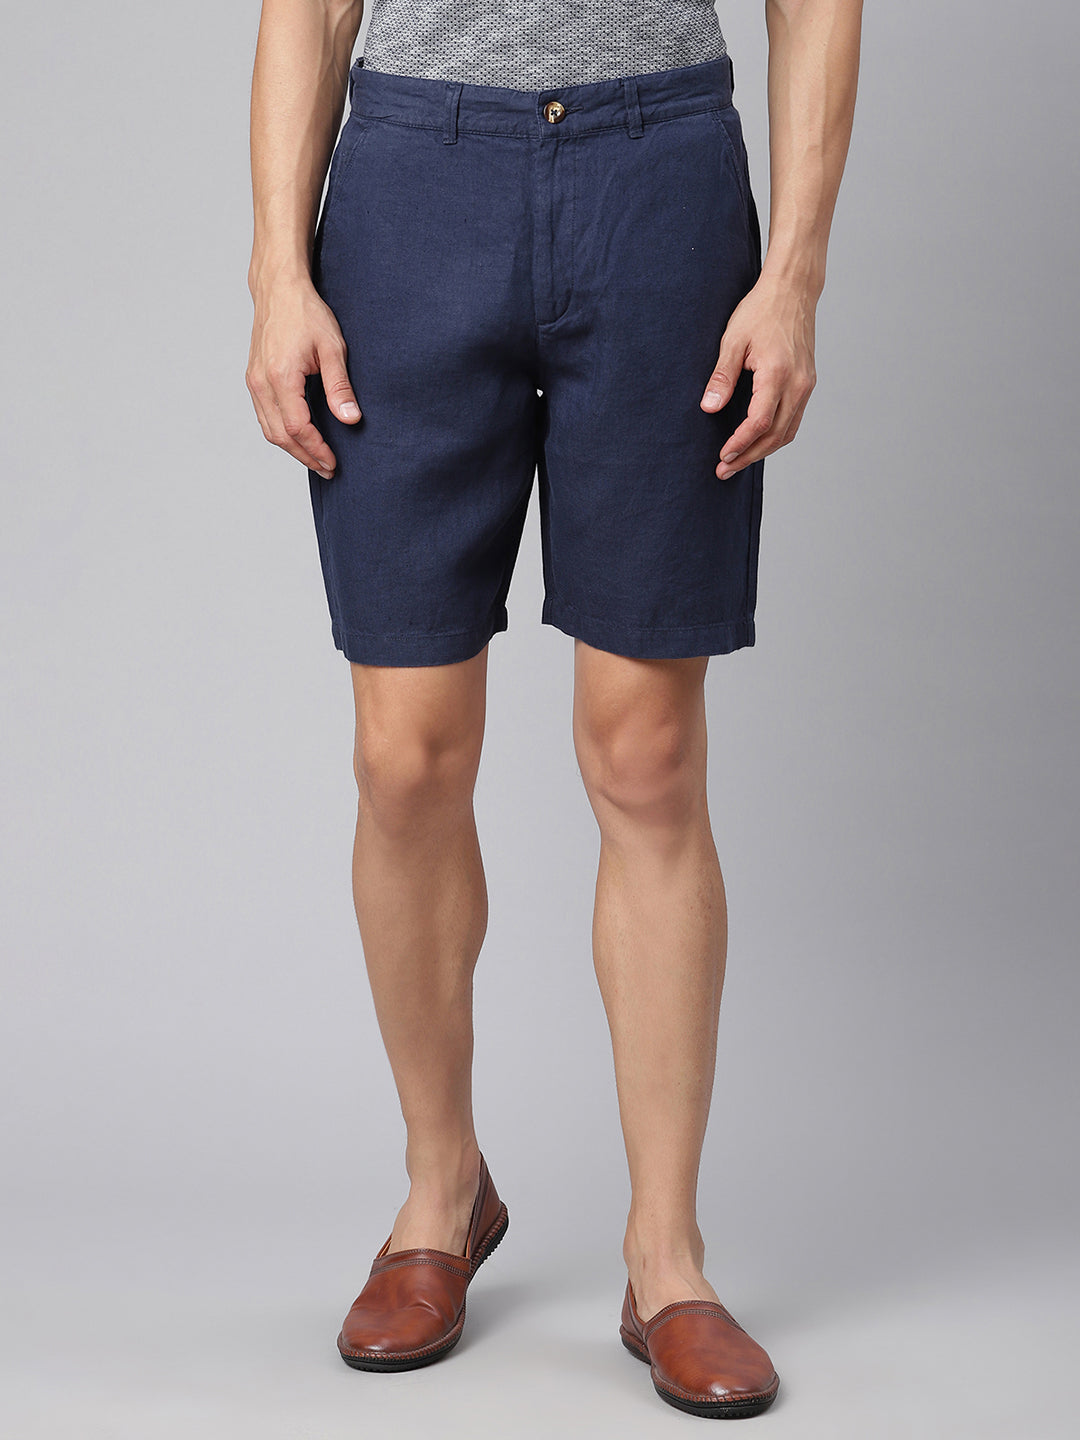 Harsam Men Navy Blue Solid Regular Fit Shorts